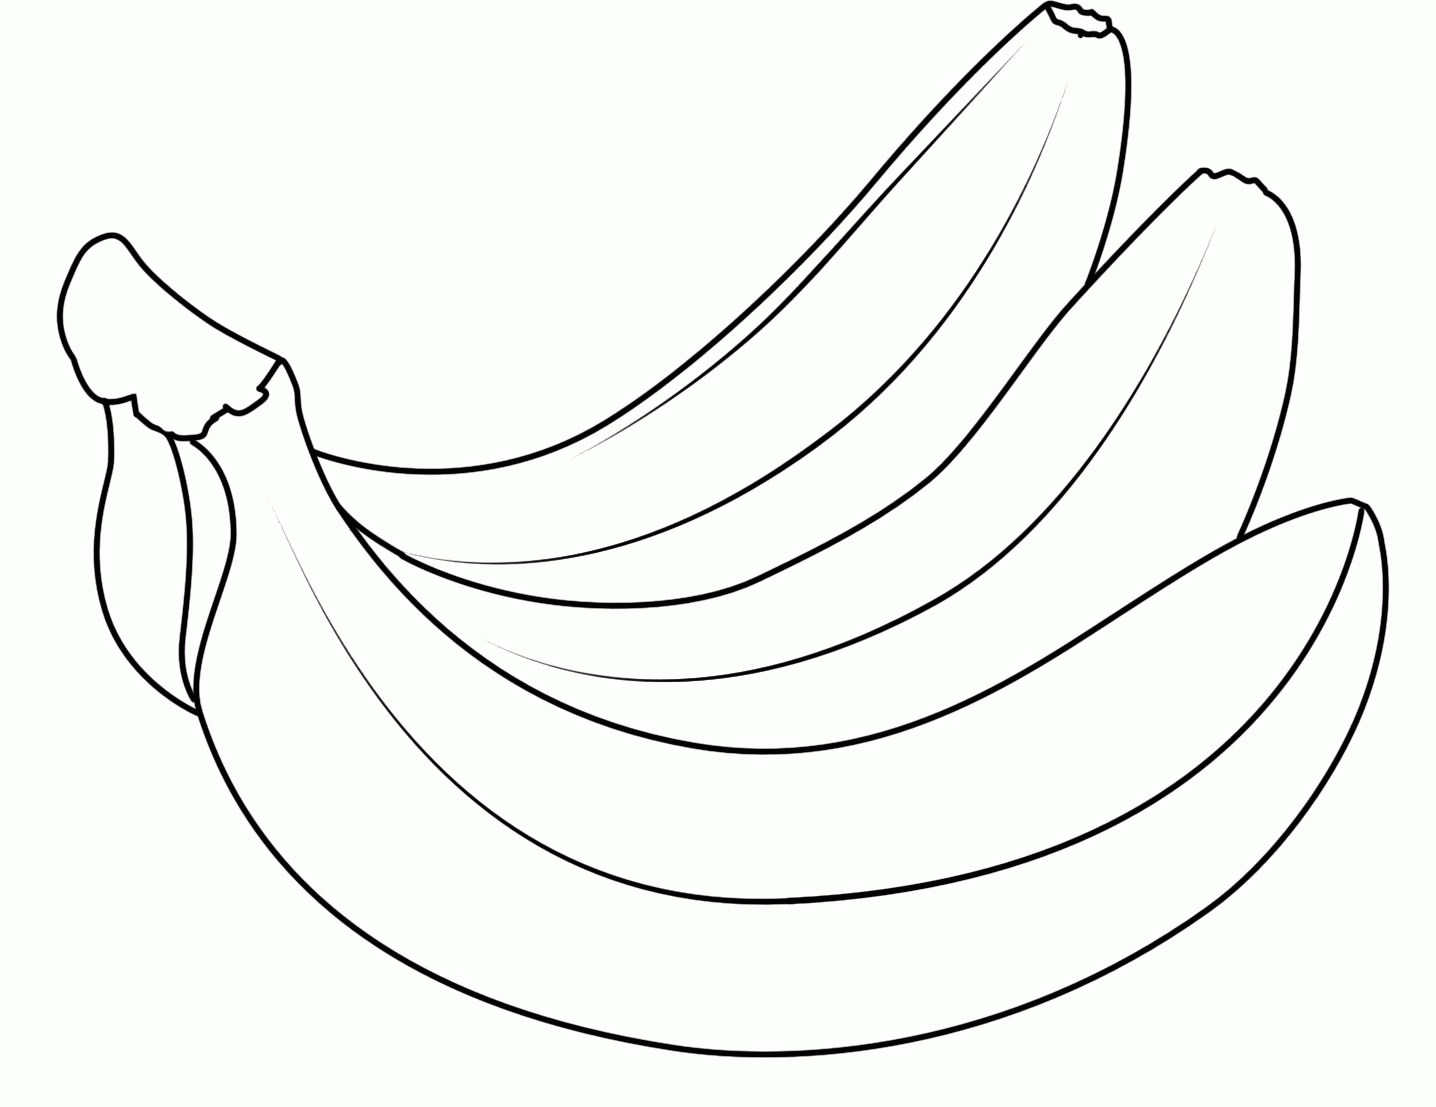 Desenho de personagem de frutas fofas para colorir para imprimir